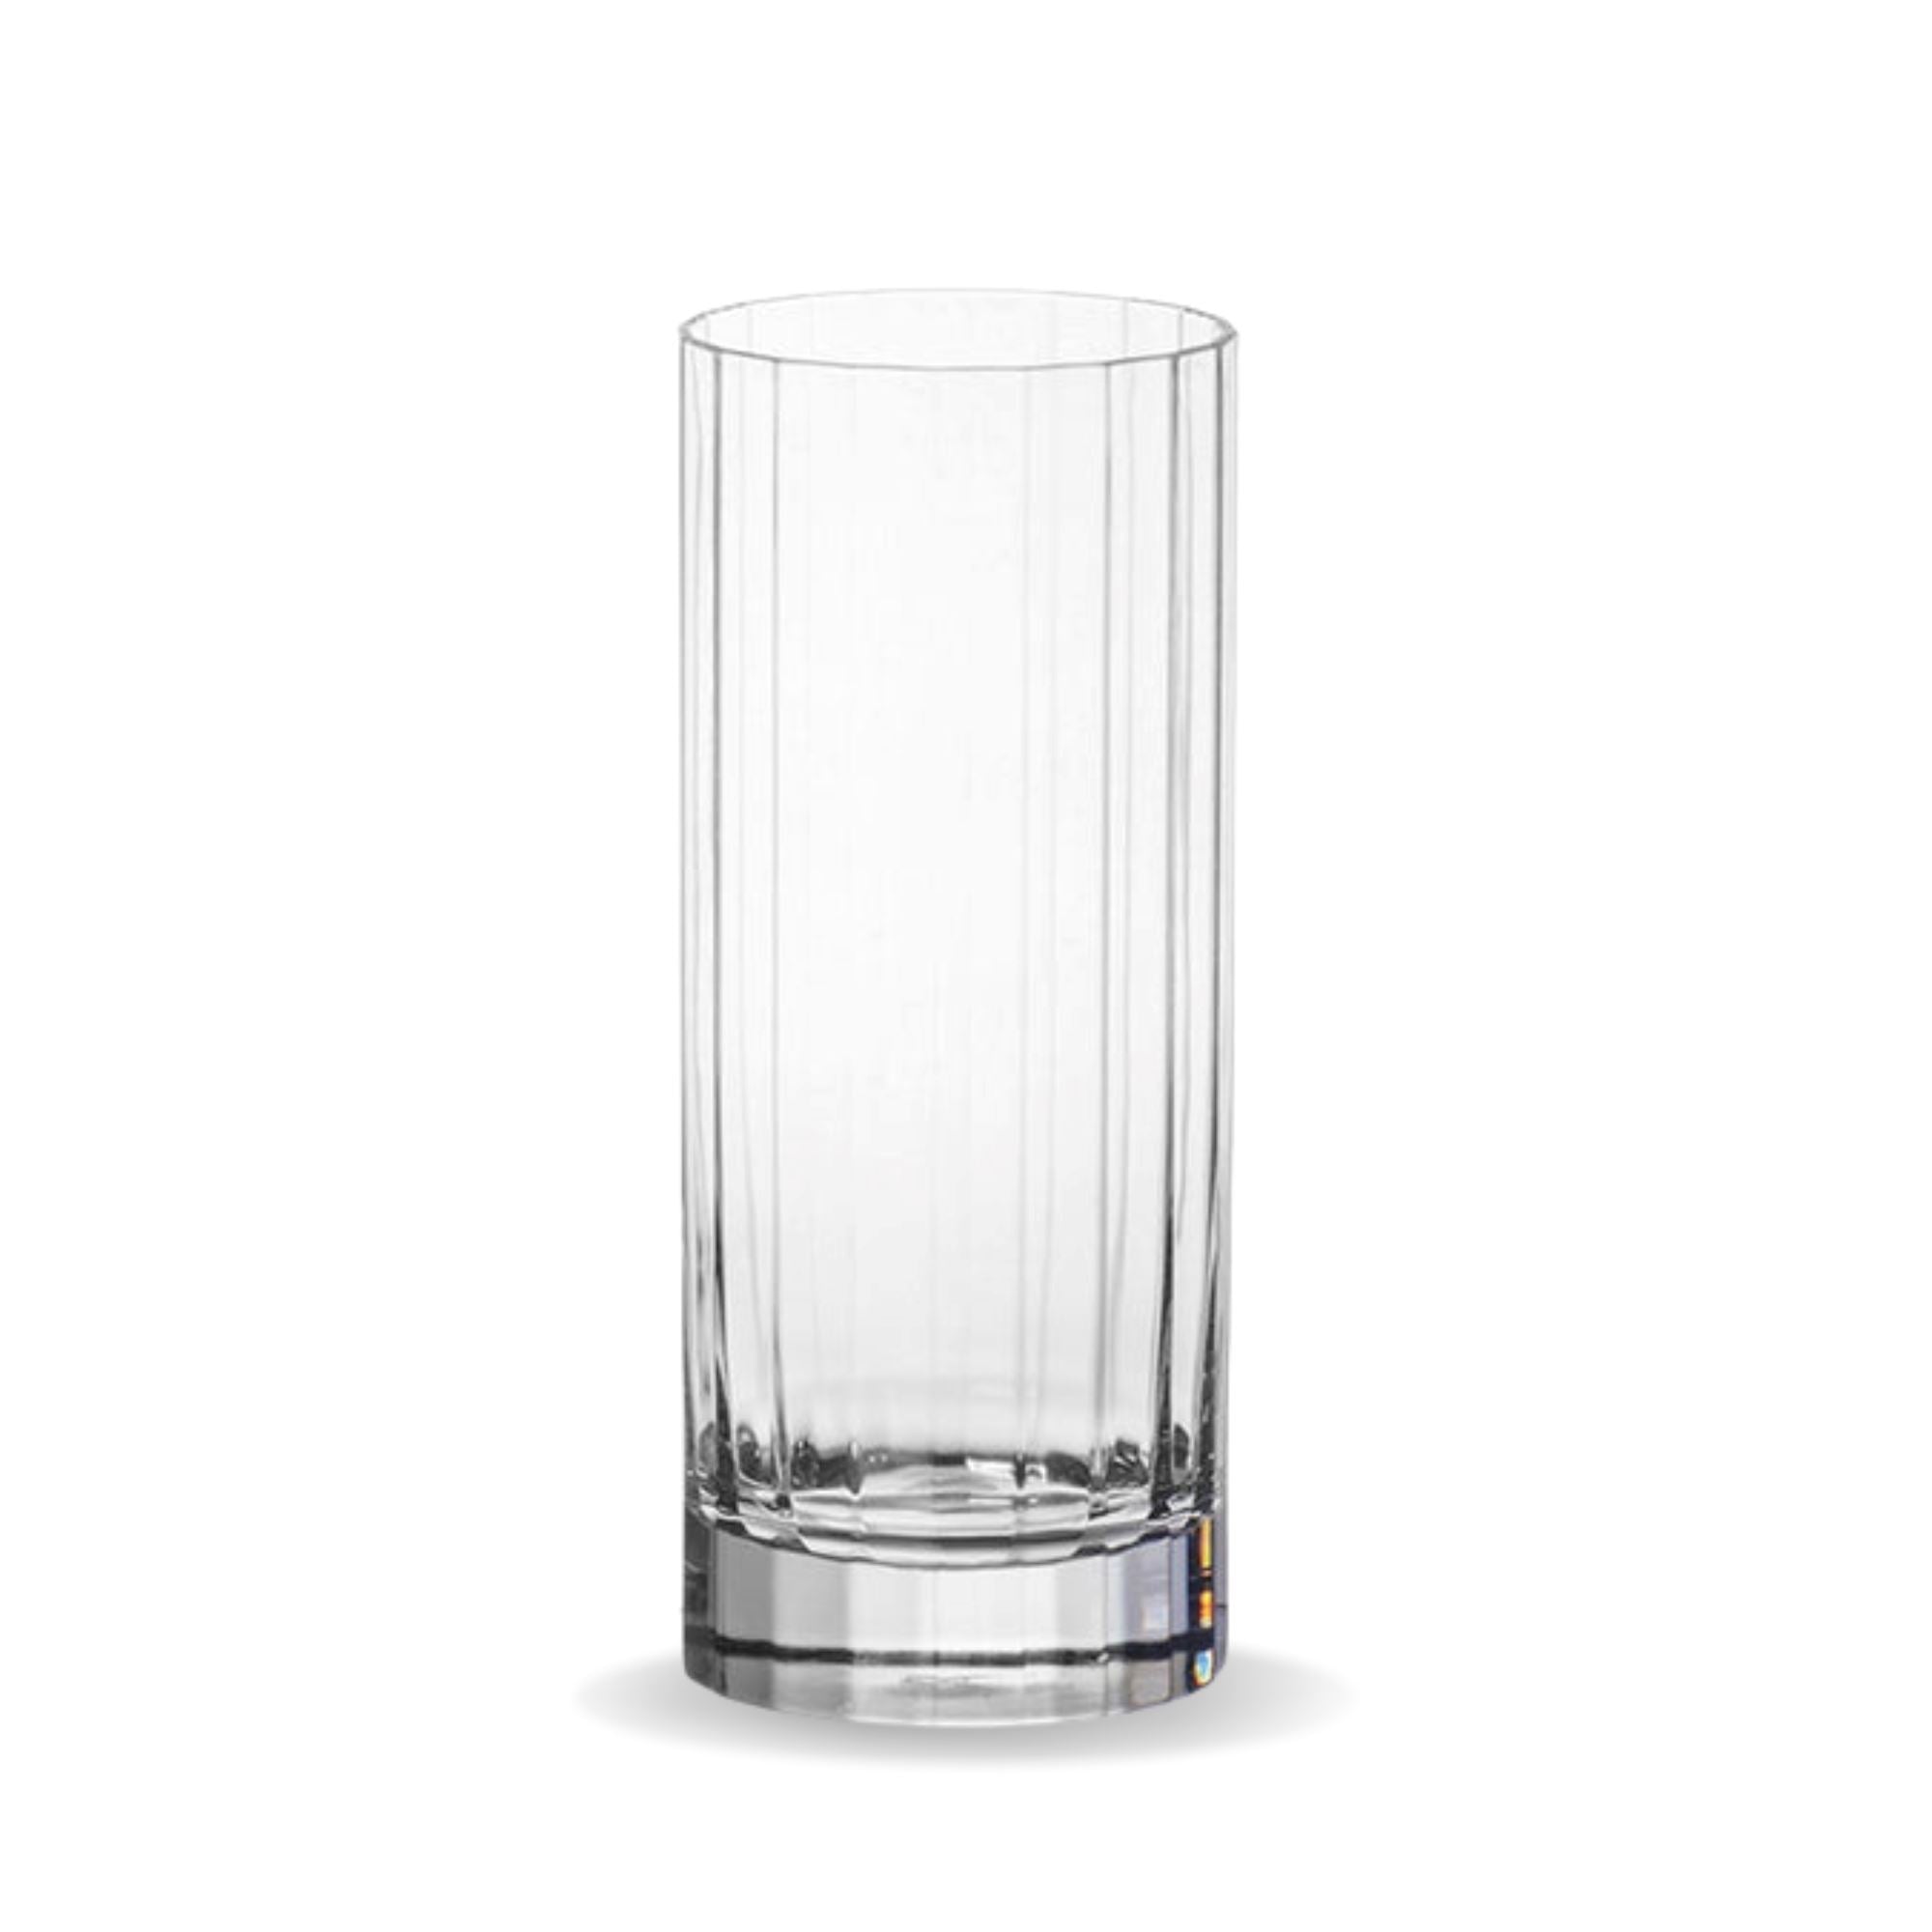 Unbreakable Bamboo Highball Glasses 350ml - Set of 4 Highball Glass D-STILL Drinkware 